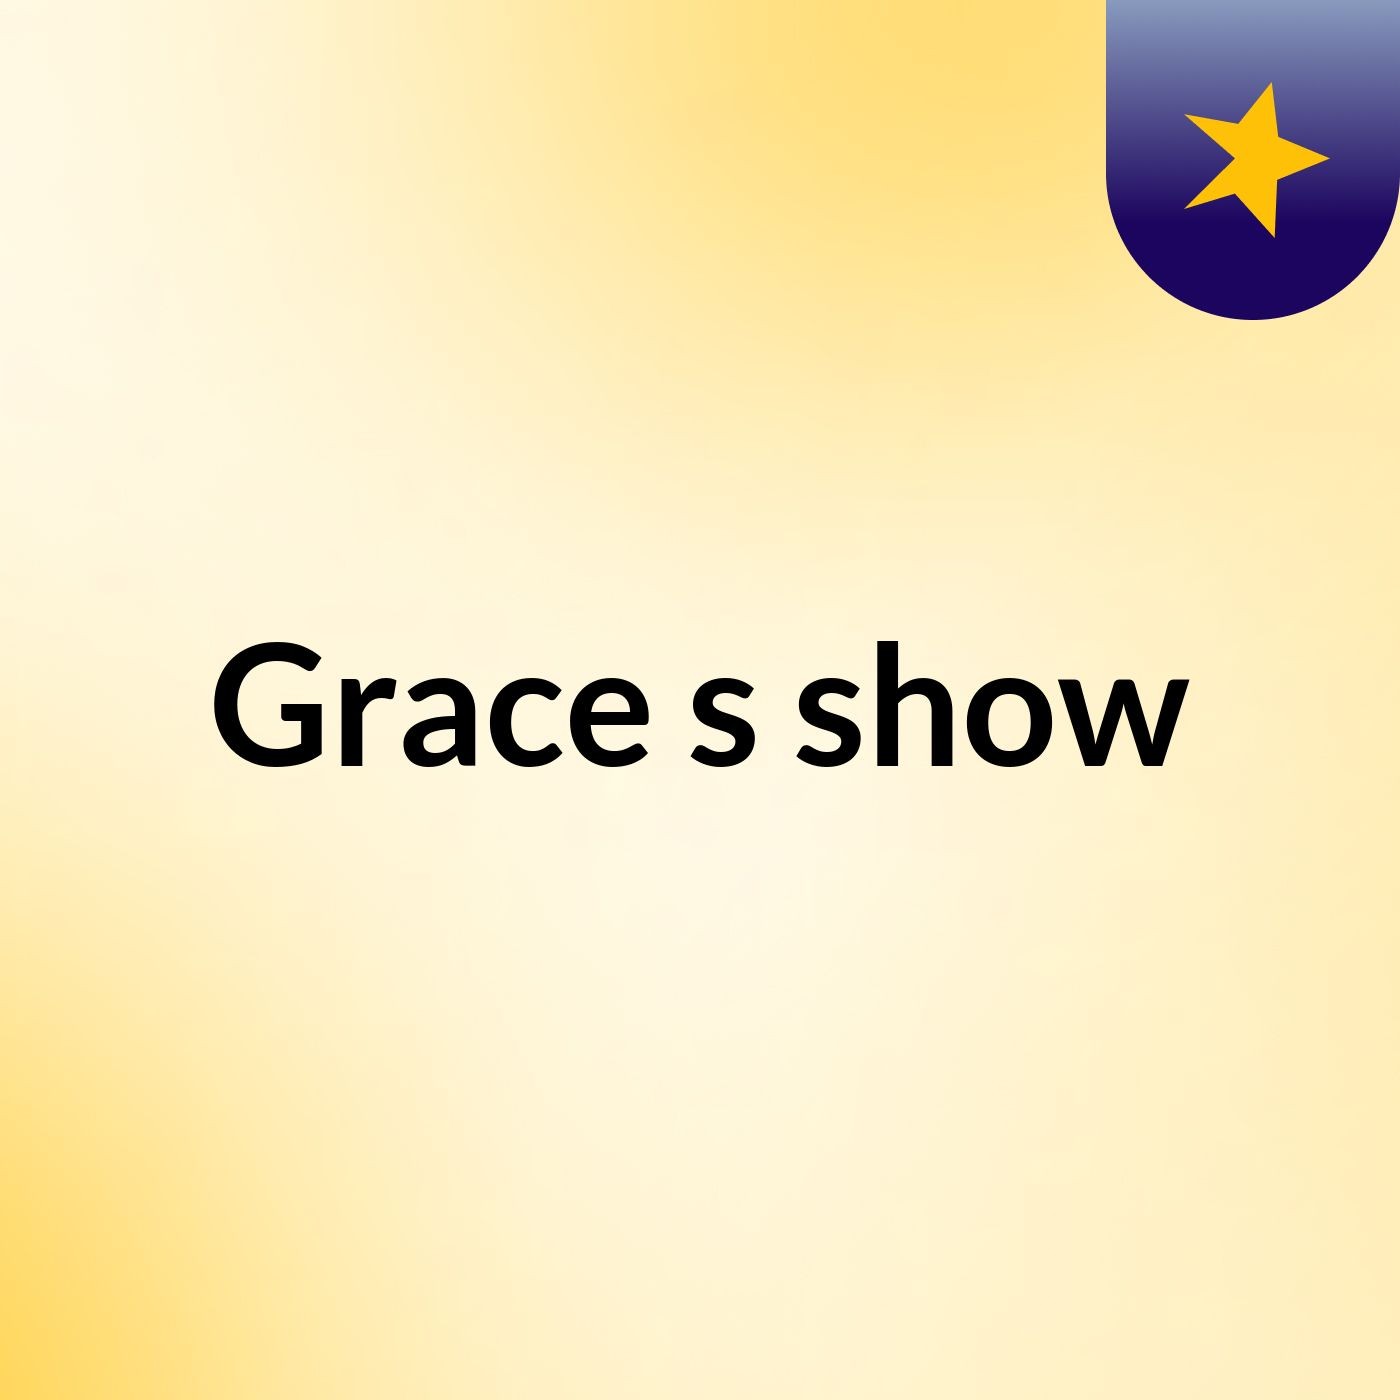 Grace's show